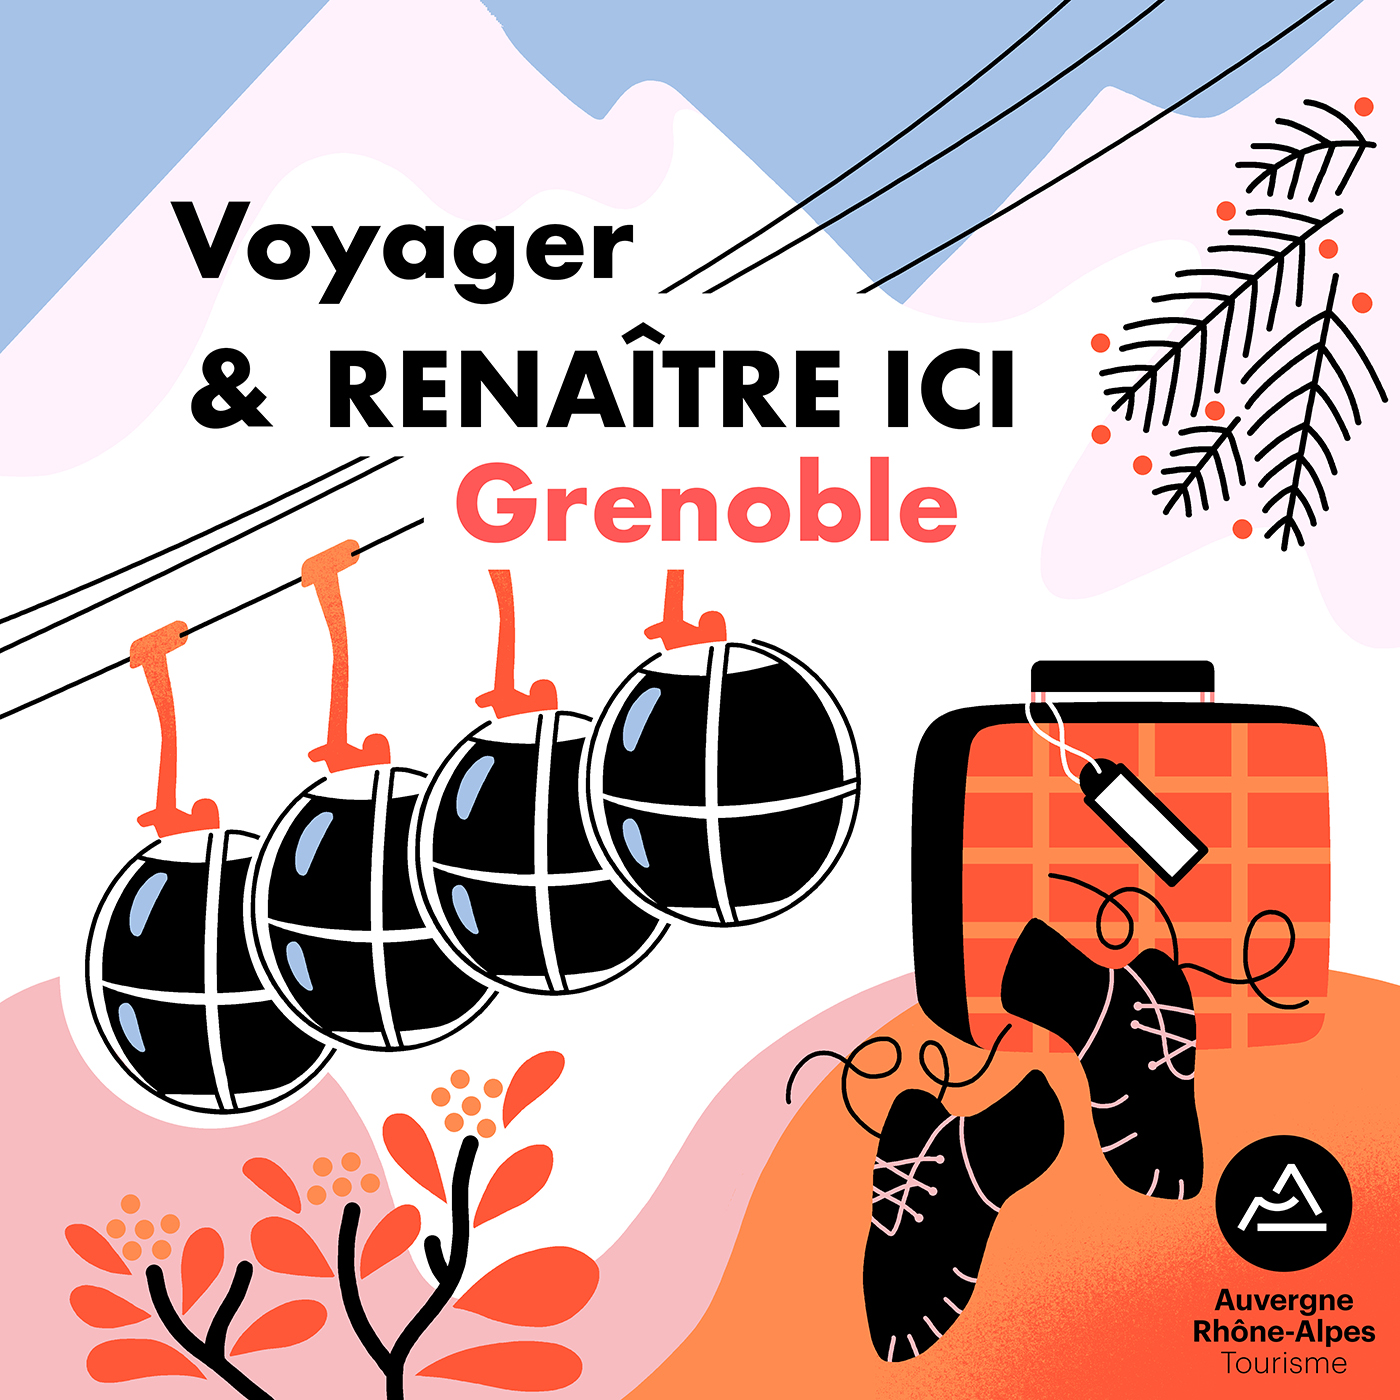 Clod illustration Podcast Renaitre Ici saison 2 pour la Région Auvergne-Rhône-Alpes